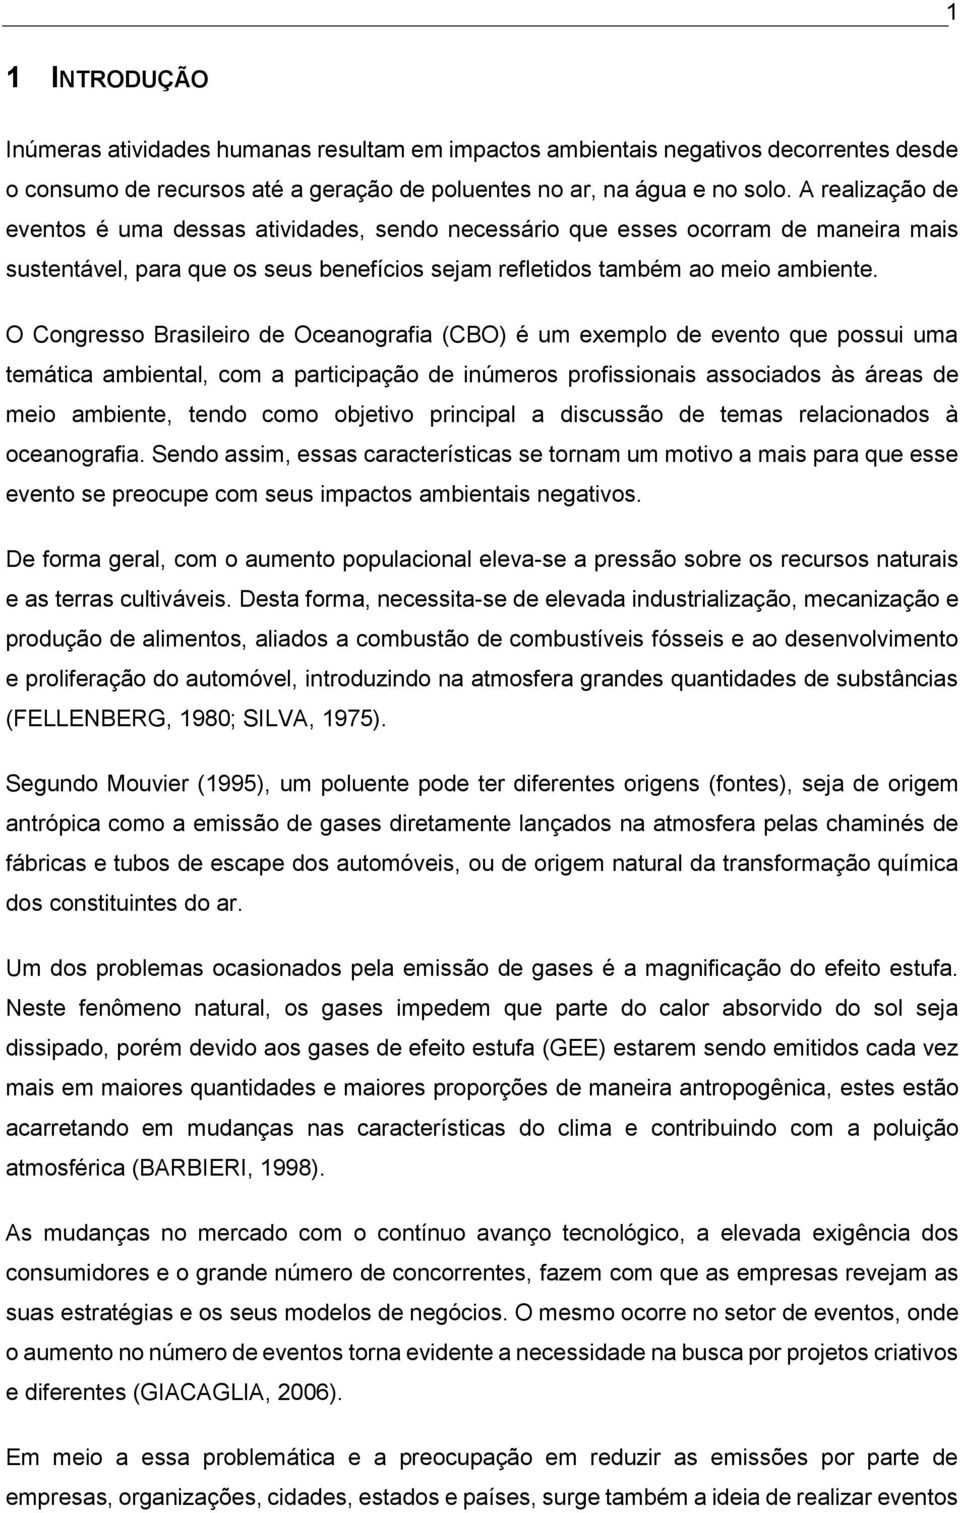 O Congresso Brasileiro de Oceanografia (CBO) é um exemplo de evento que possui uma temática ambiental, com a participação de inúmeros profissionais associados às áreas de meio ambiente, tendo como